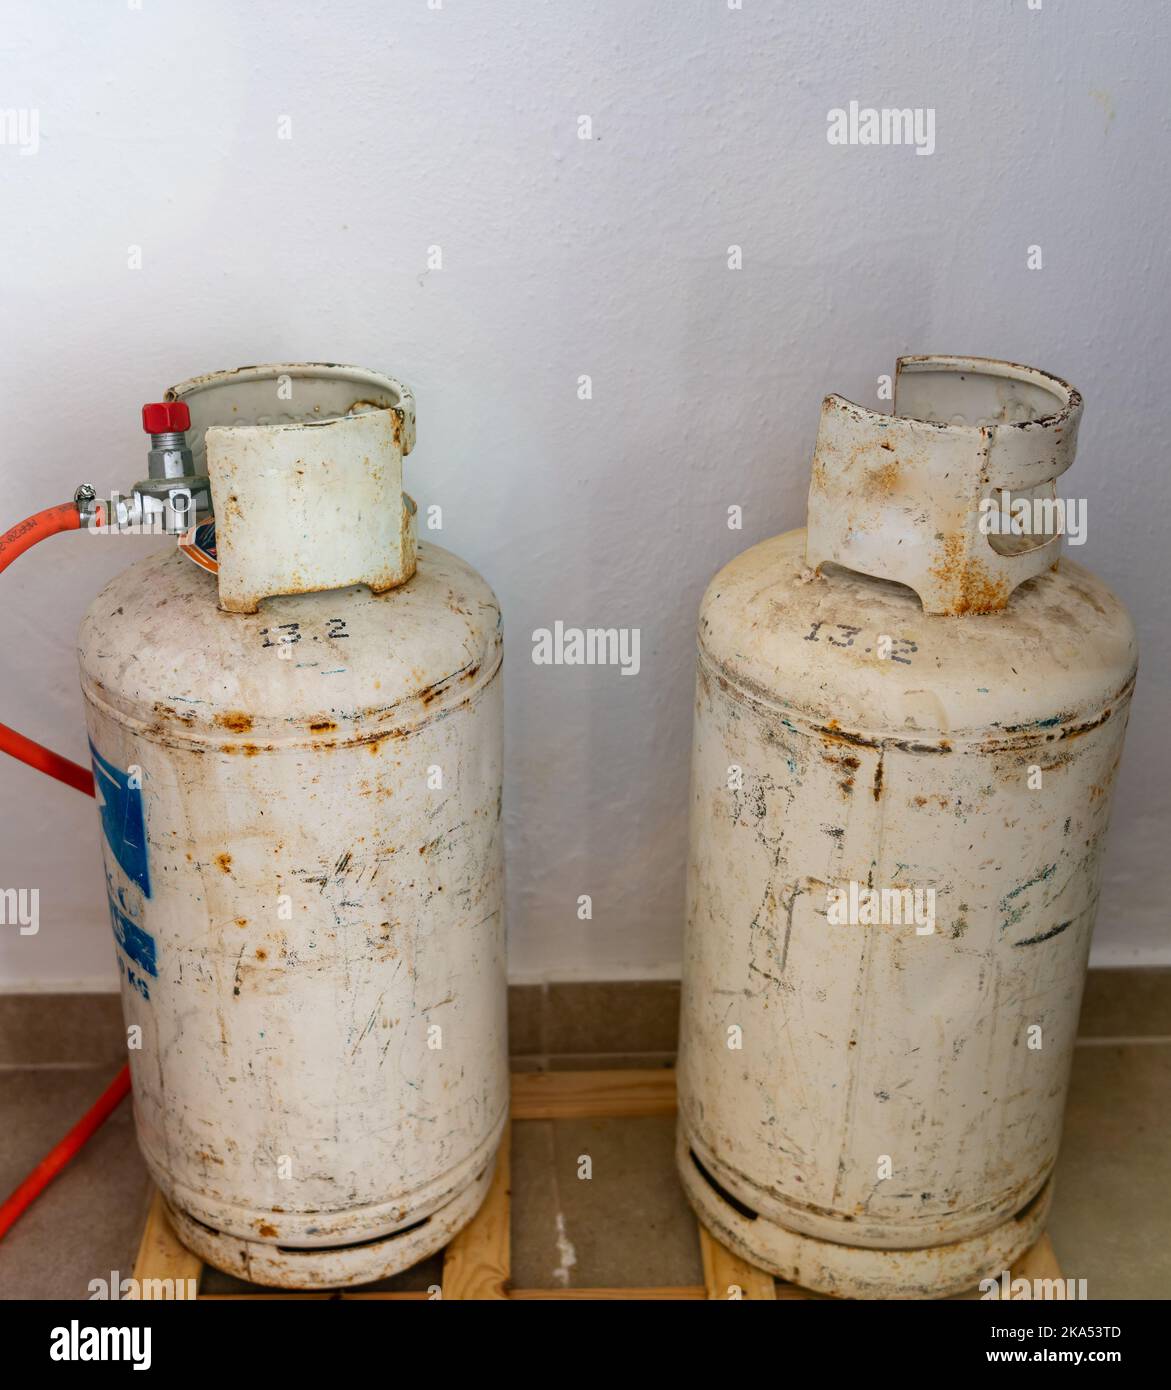 Deux bouteilles de gaz de pétrole liquéfié utilisées pour la cuisson et le chauffage. Banque D'Images